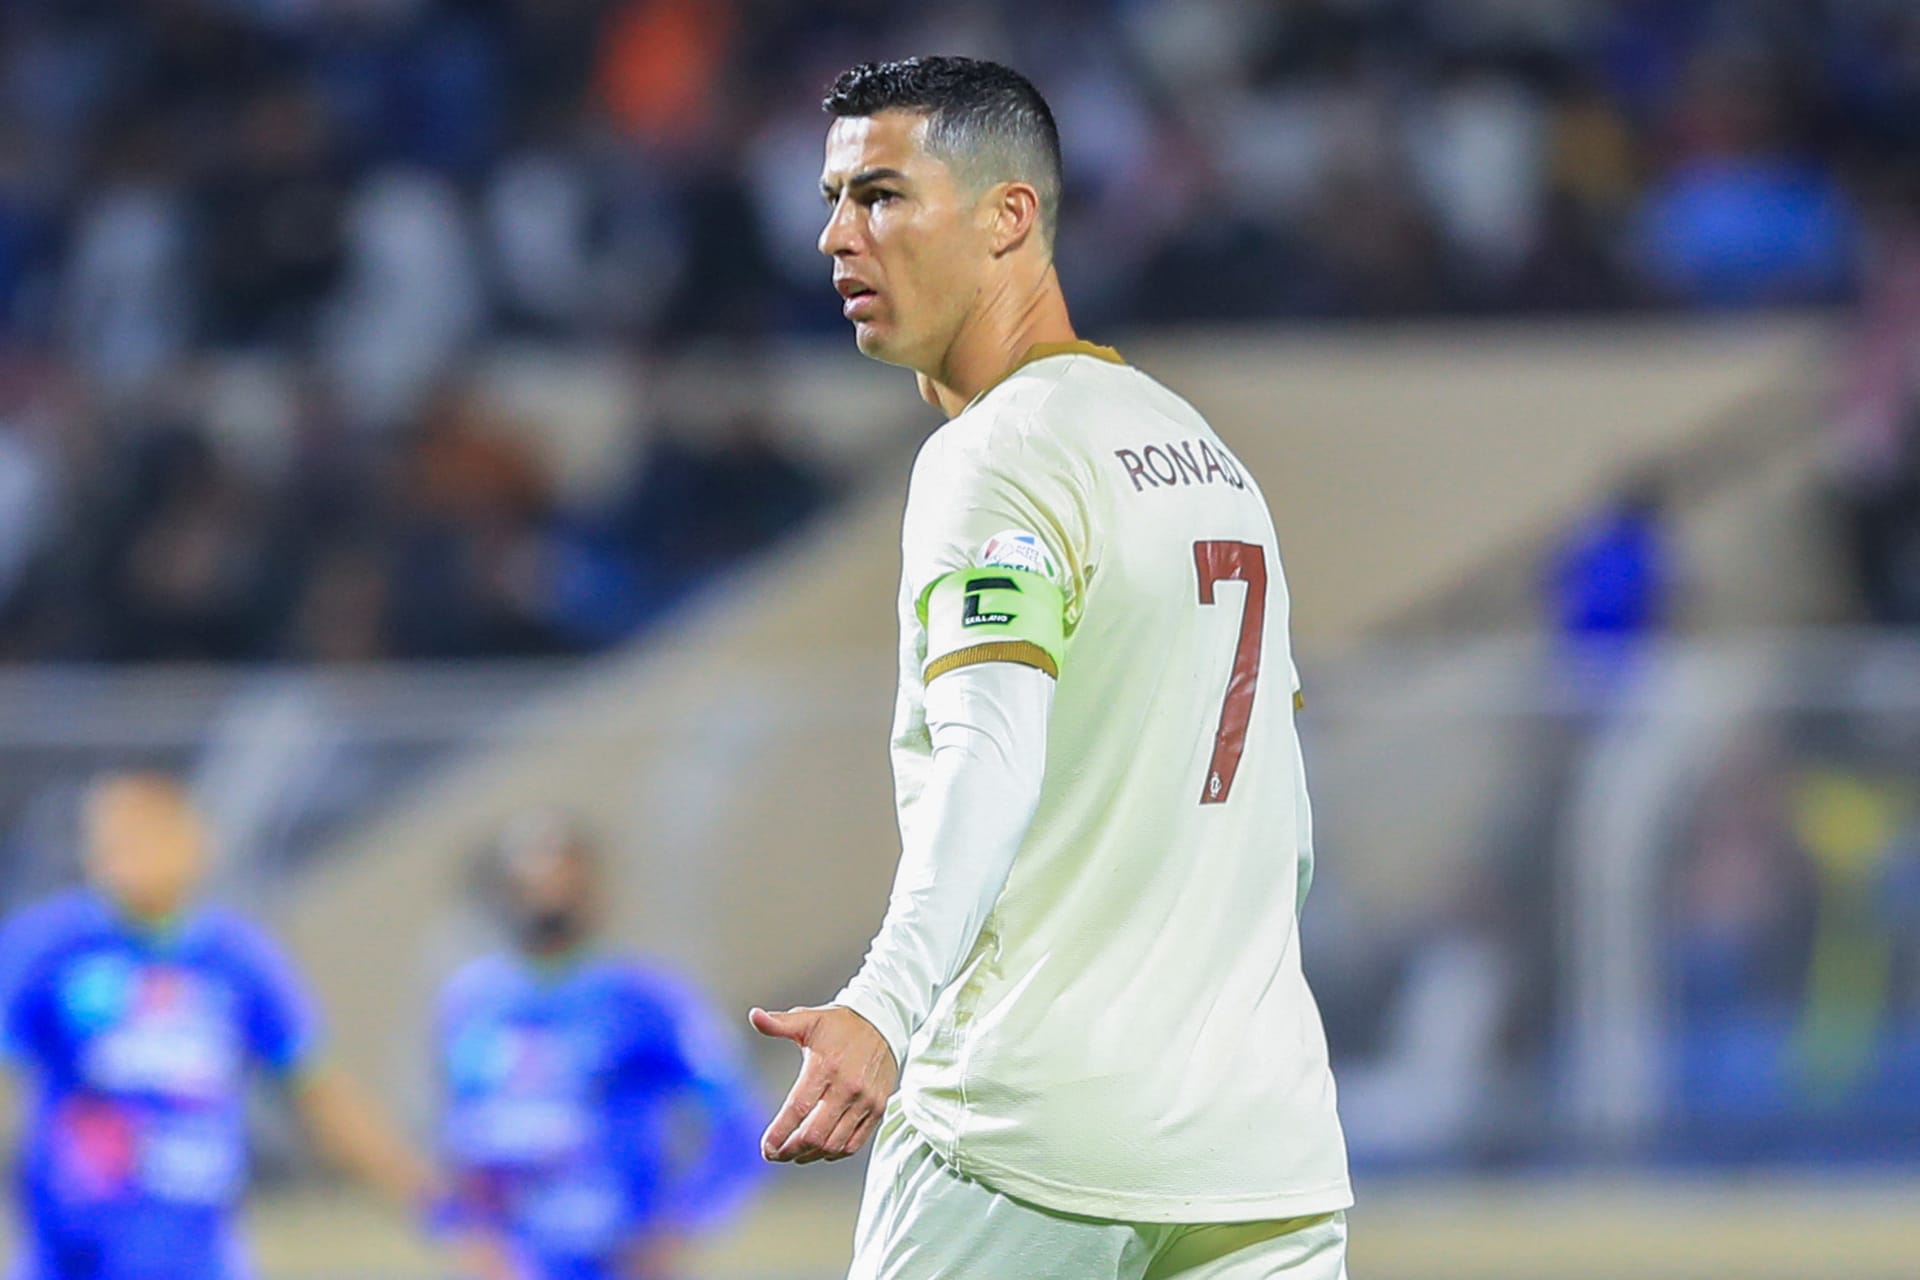 ب8 أهداف و2 أسيست..رونالدو يتوج بجائزة لاعب شهر فبراير في الدوري السعودي